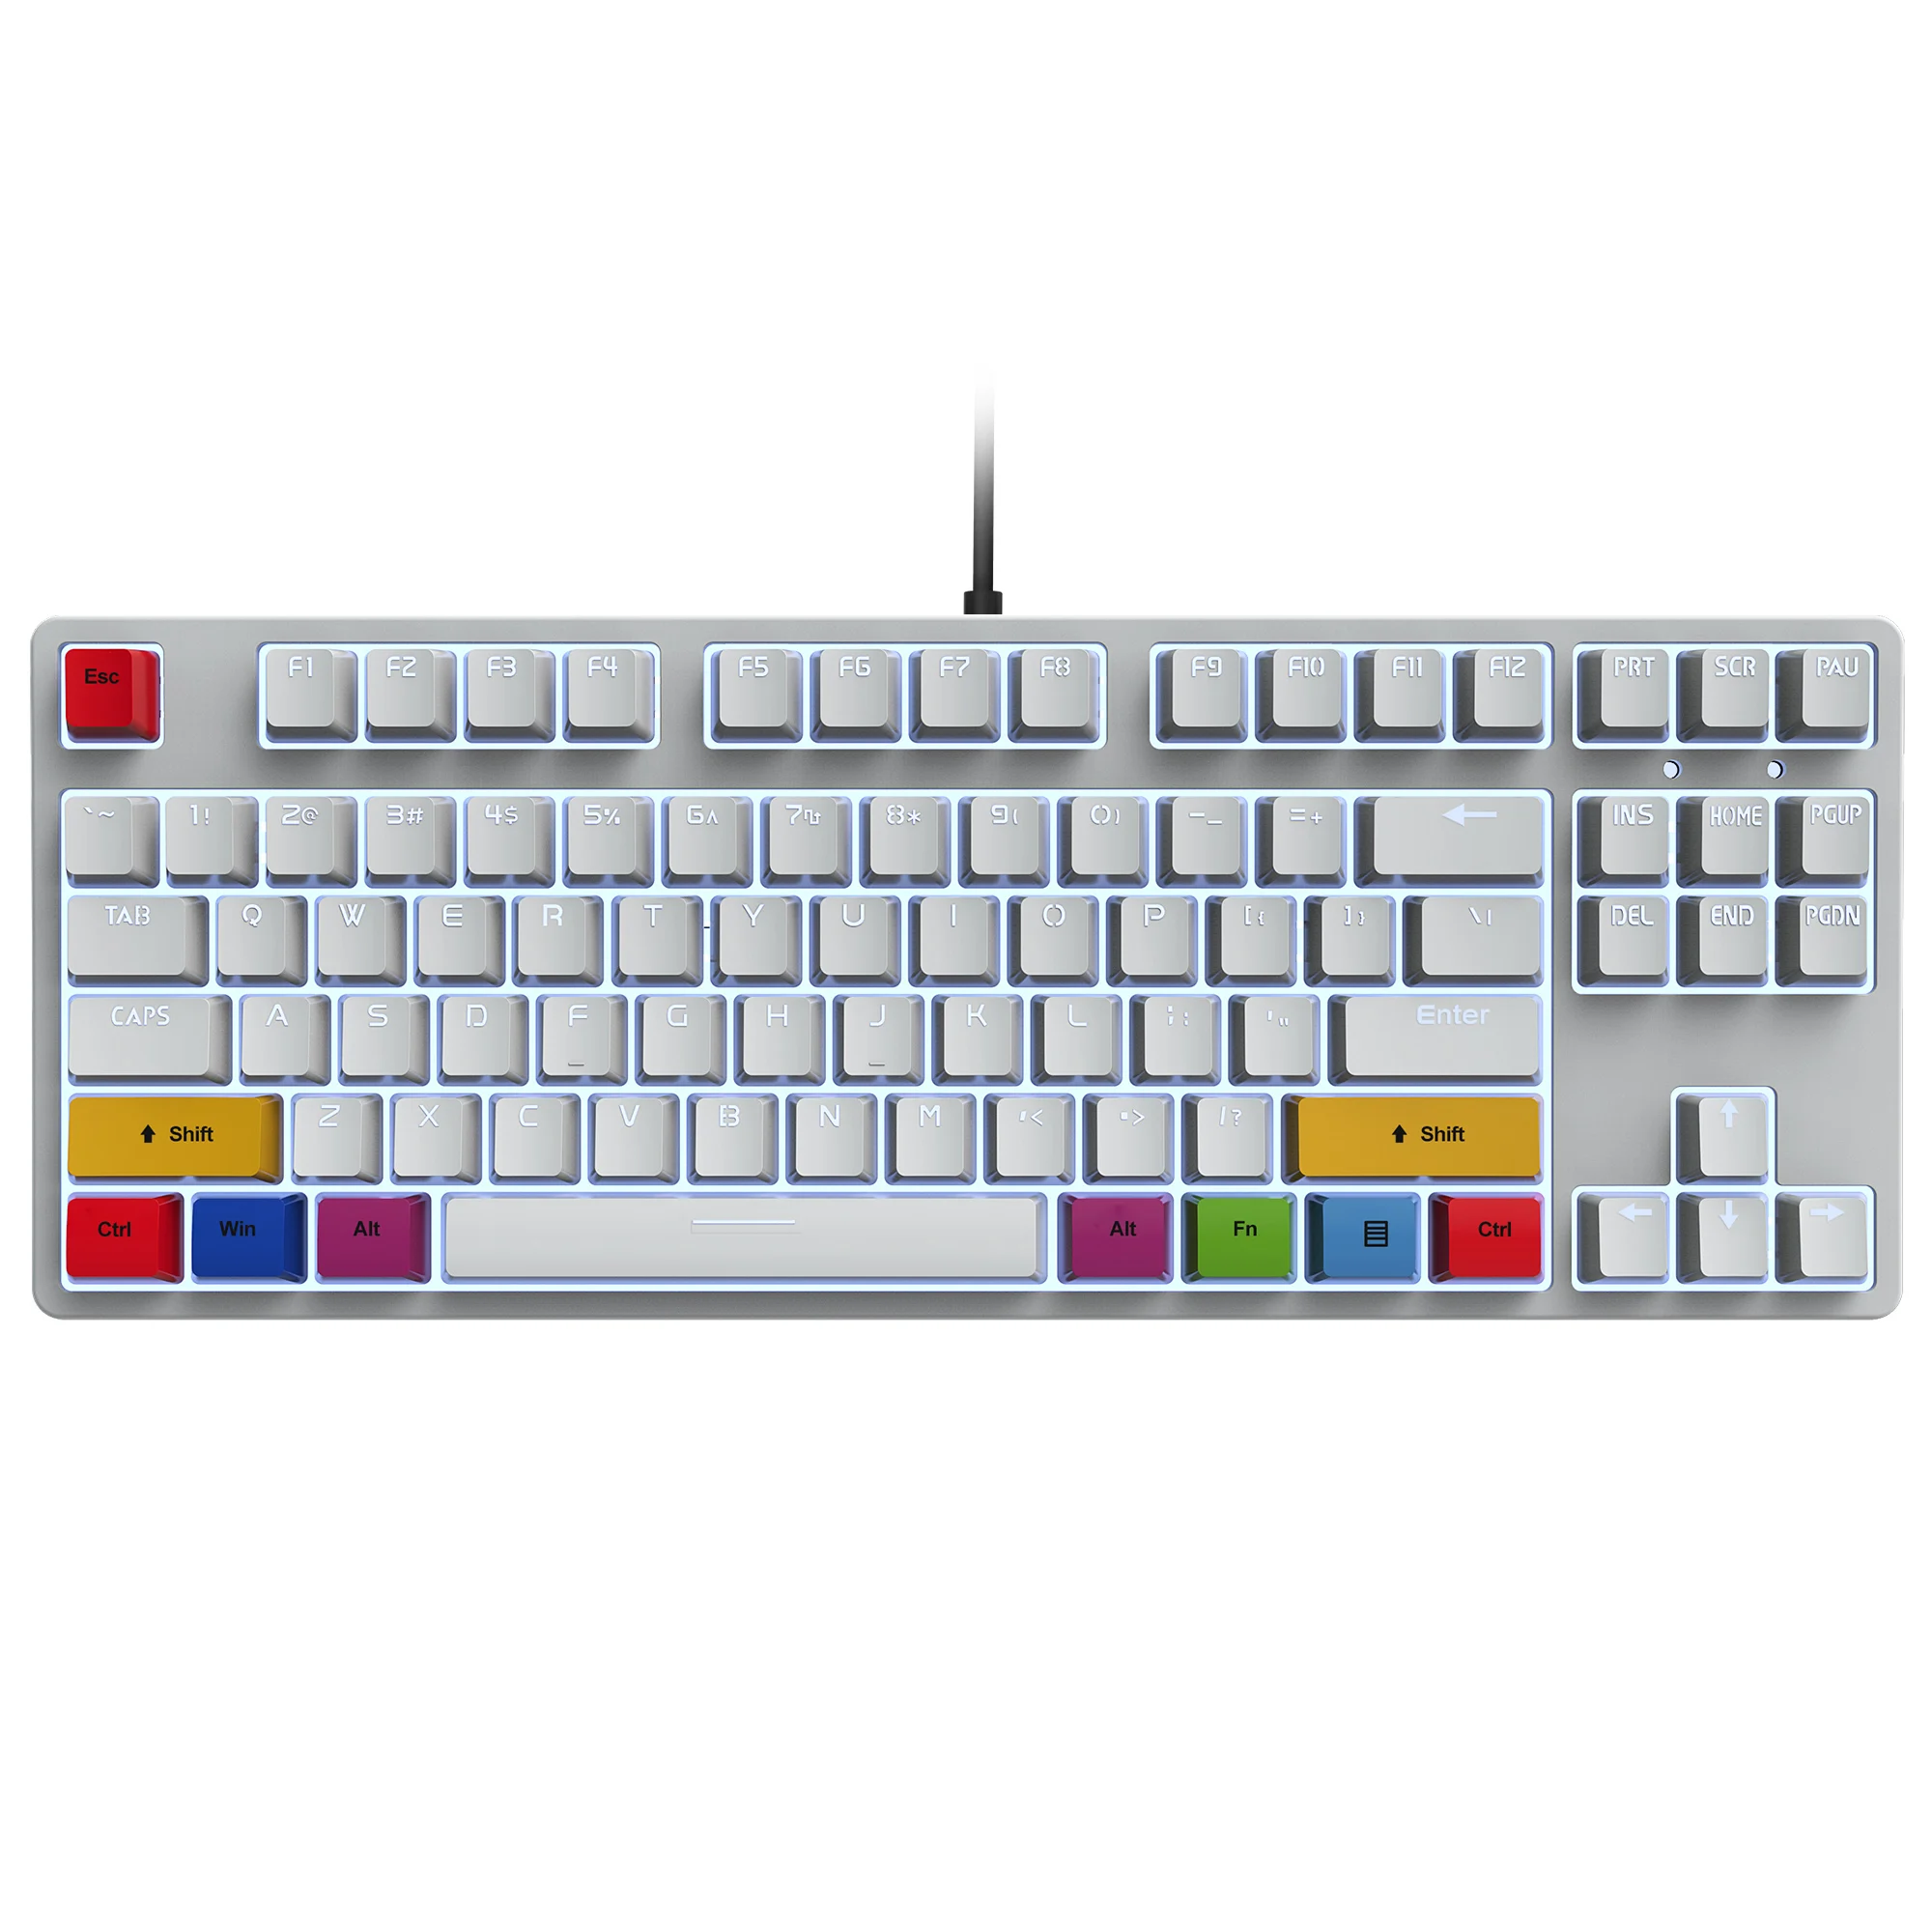 Механическая клавиатура с 87 клавишами красный переключатель RGB подсветка